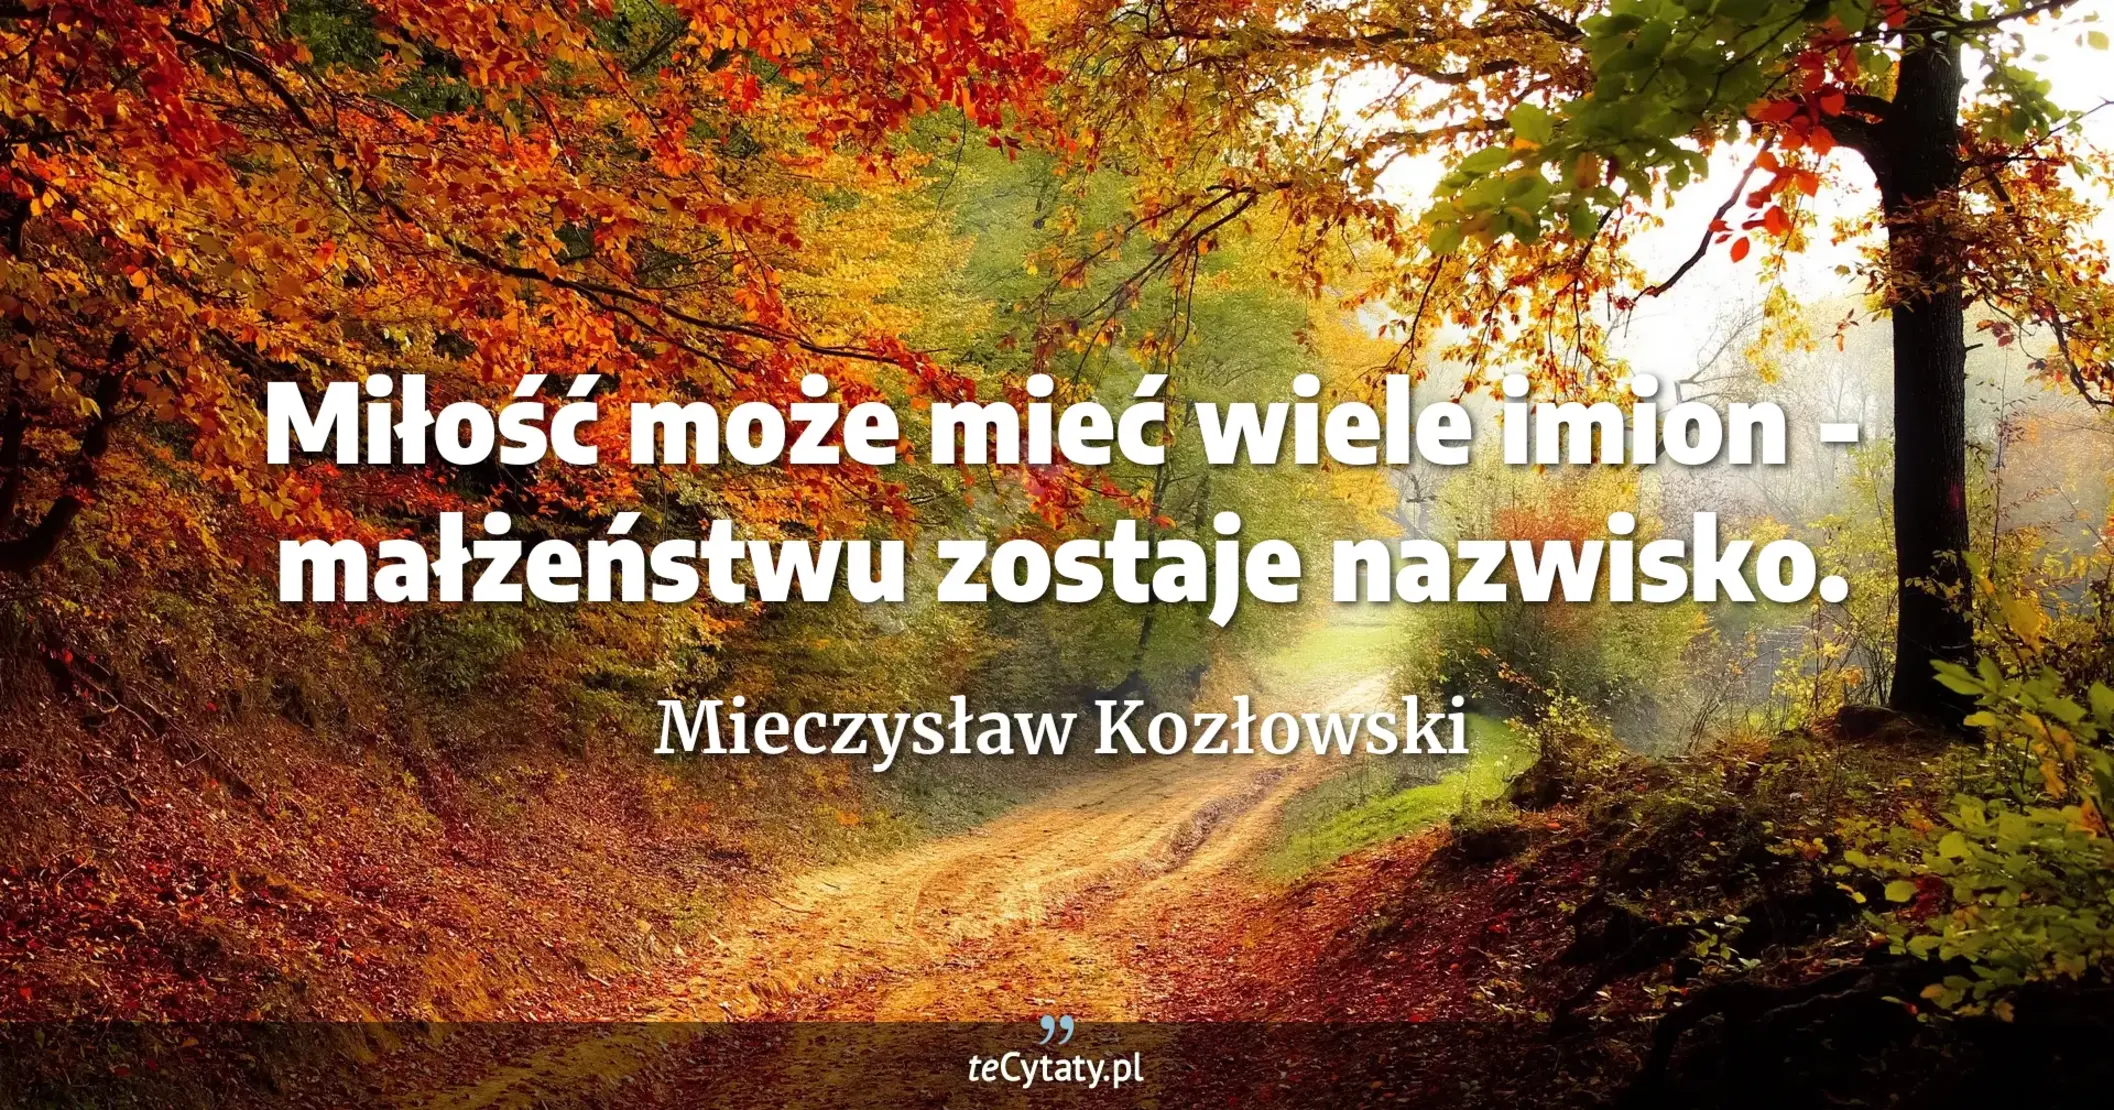 Miłość może mieć wiele imion - małżeństwu zostaje nazwisko. - Mieczysław Kozłowski